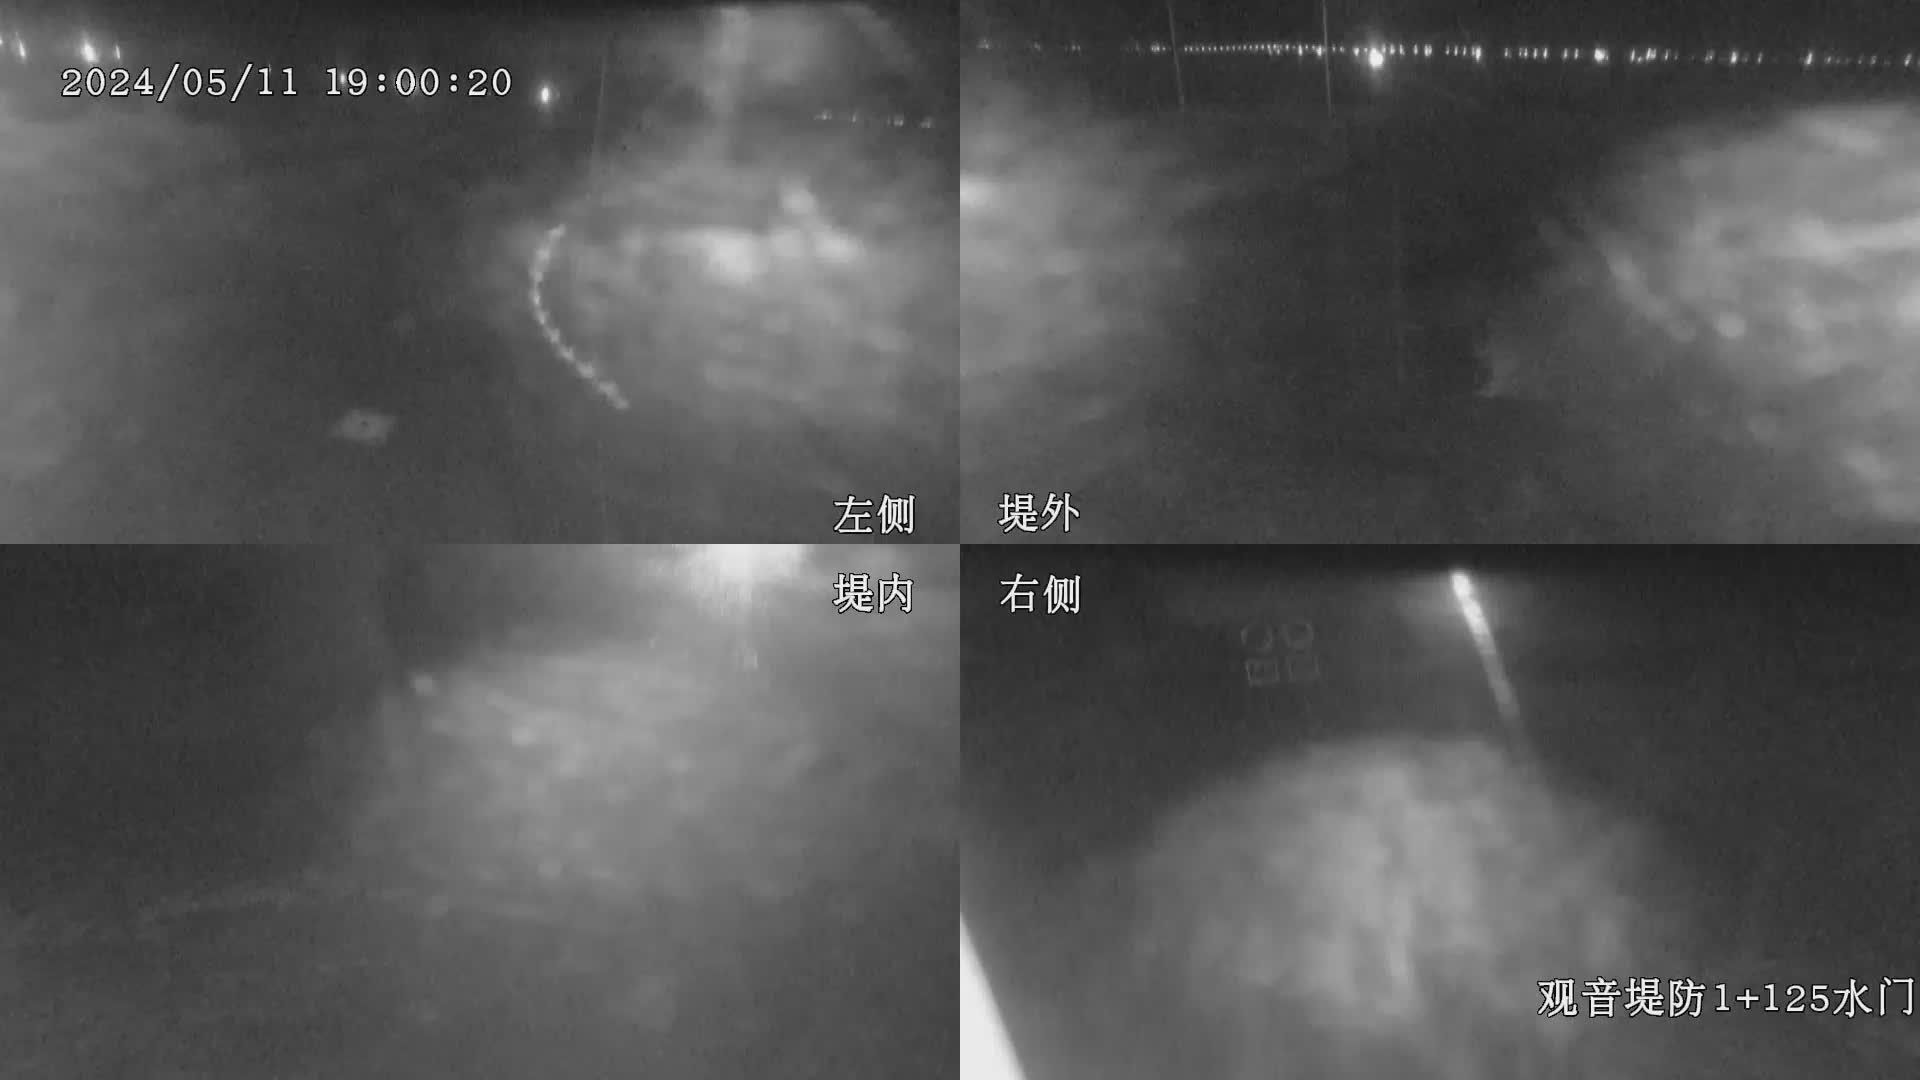 水利署水資源  九河局 觀音堤防1+125水門 全景攝影機 距離7.7公里 氣溫18.1度